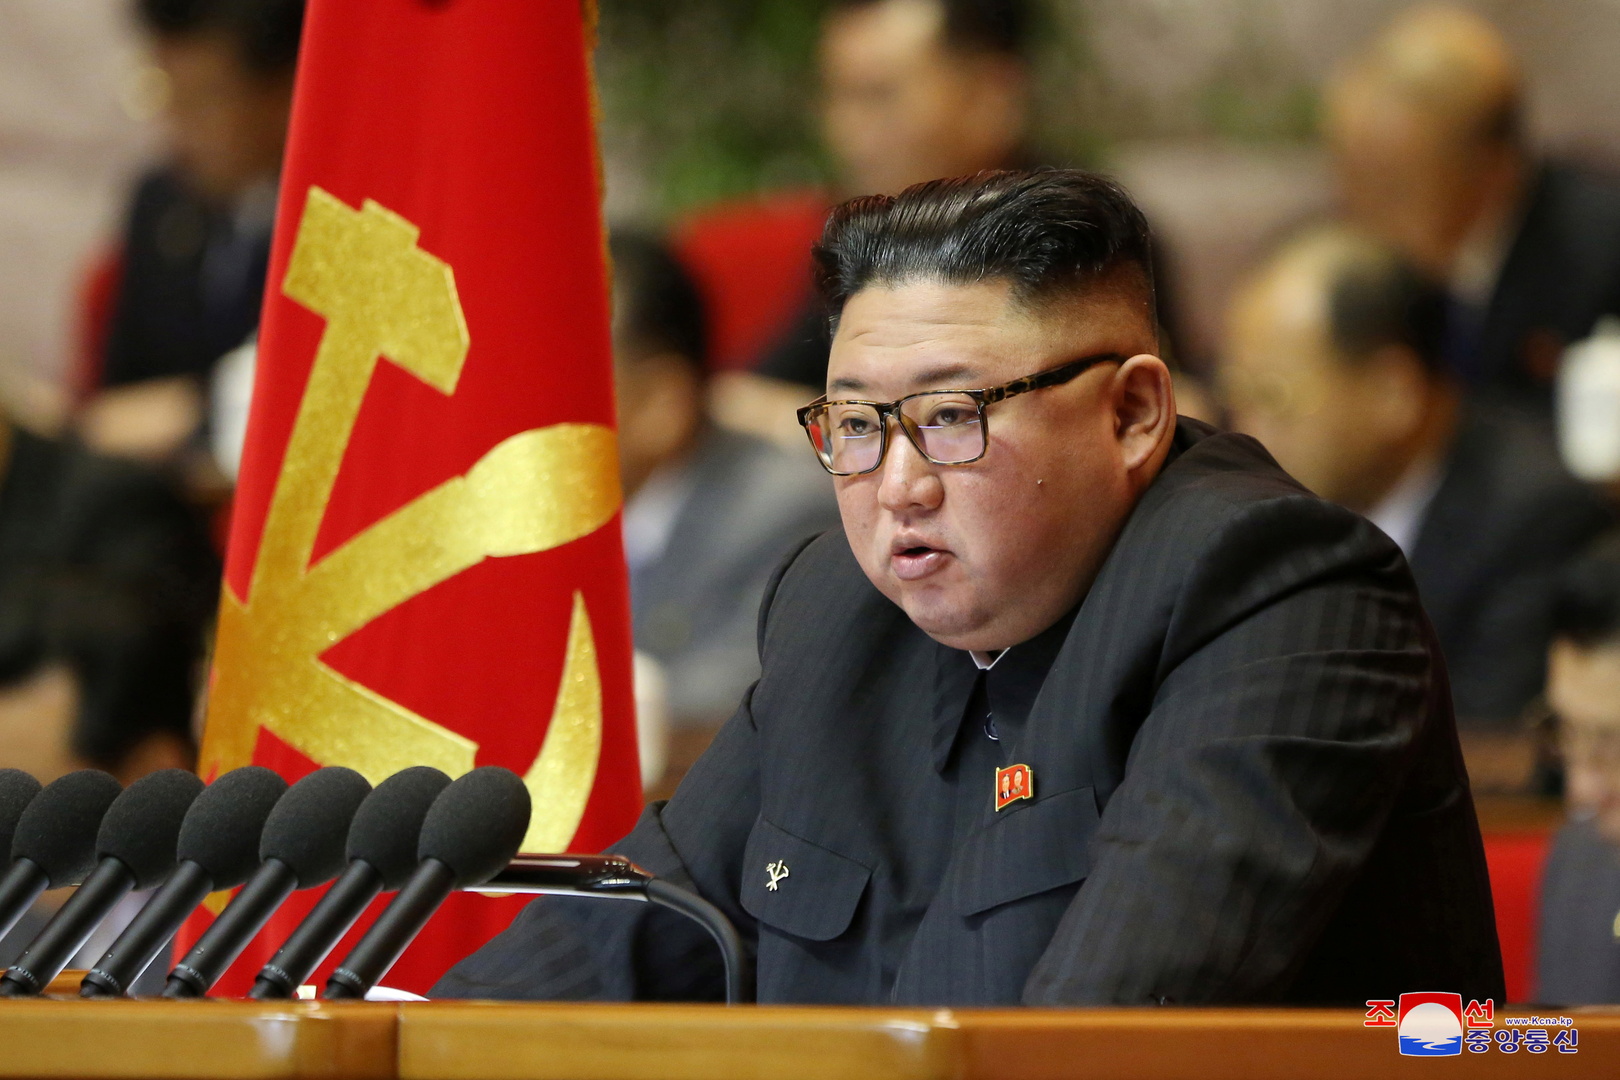 كوريا الشمالية تنوي تصنيع سلاح نووي صغير وخفيف يصل مداه إلى 15 ألف كيلومتر